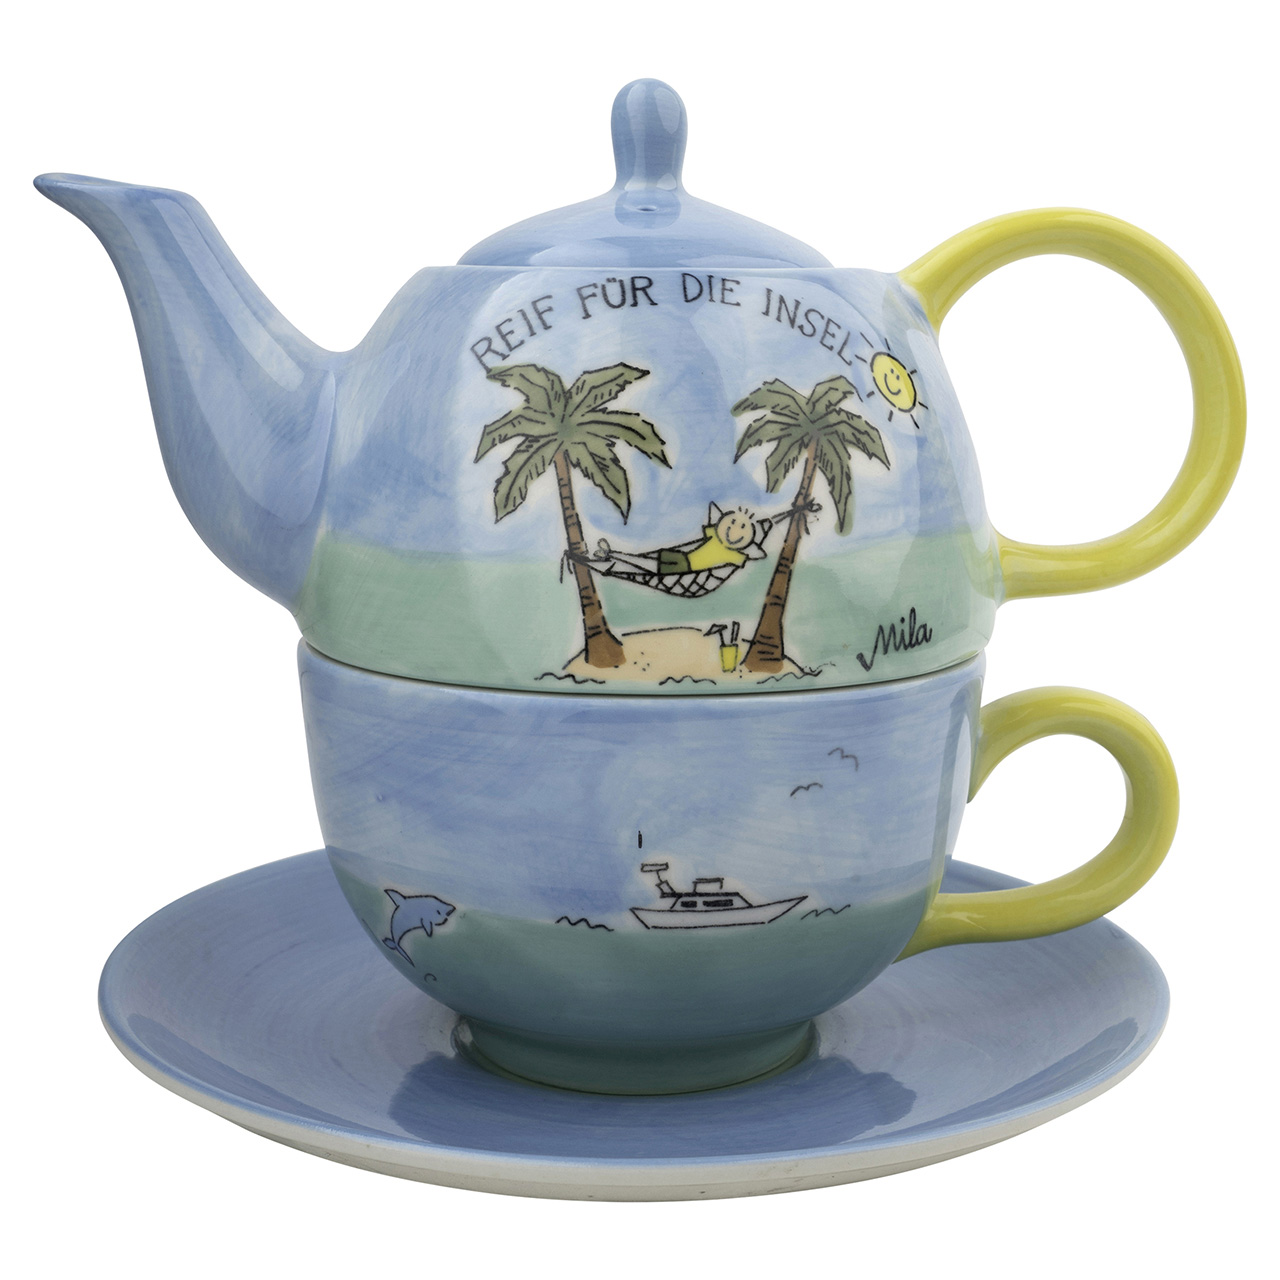 Tea for one - Reif für die Insel